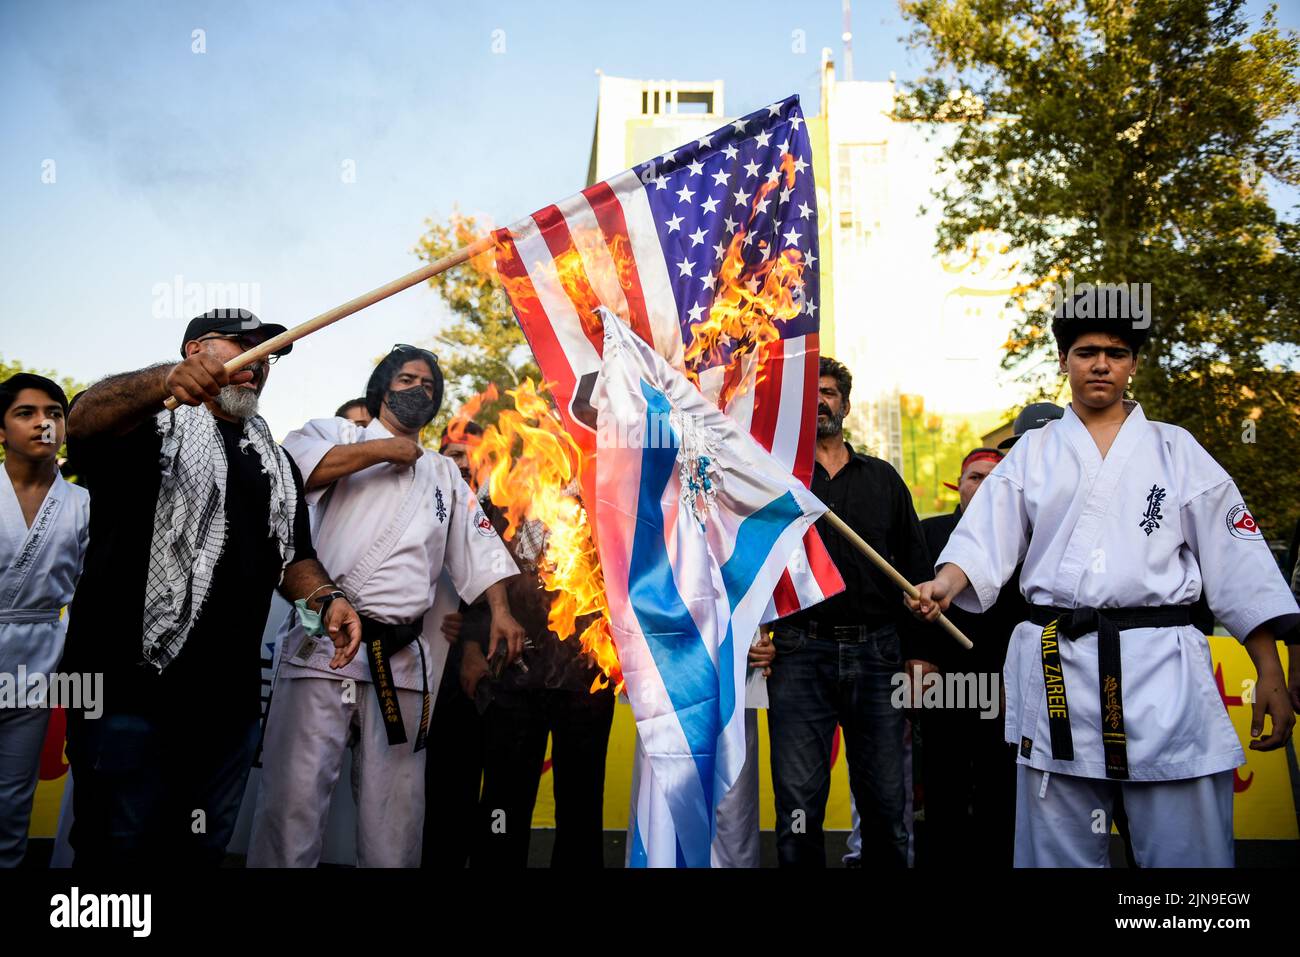 Dos hombres queman las banderas de Estados Unidos e Israel durante una manifestación de protesta contra Israel en el centro de Teherán, Irán, el 9 de agosto de 2022. (Foto de Sobhan Farajvan / Pacific Press/Sipa USA) Foto de stock